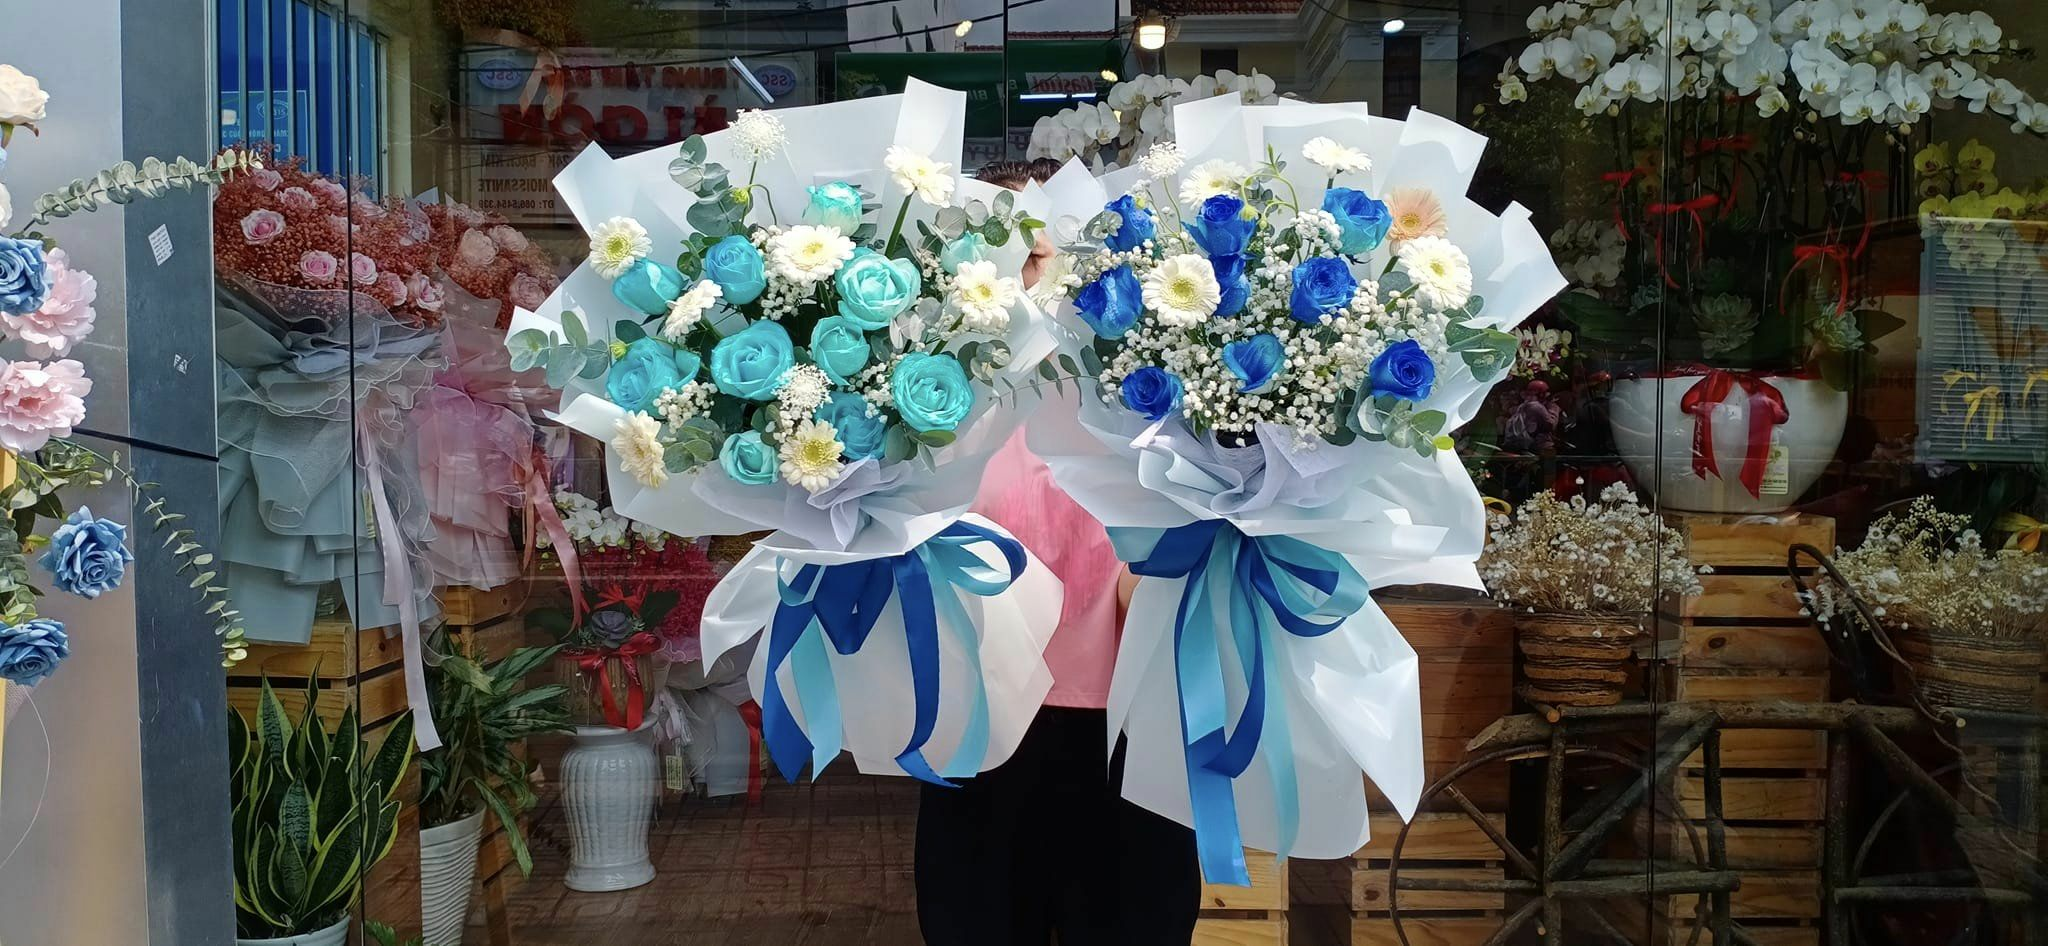 Hoa tươi HT - Tiệm hoa tươi quận 7 giá rẻ, đẹp tại TP. HCM 